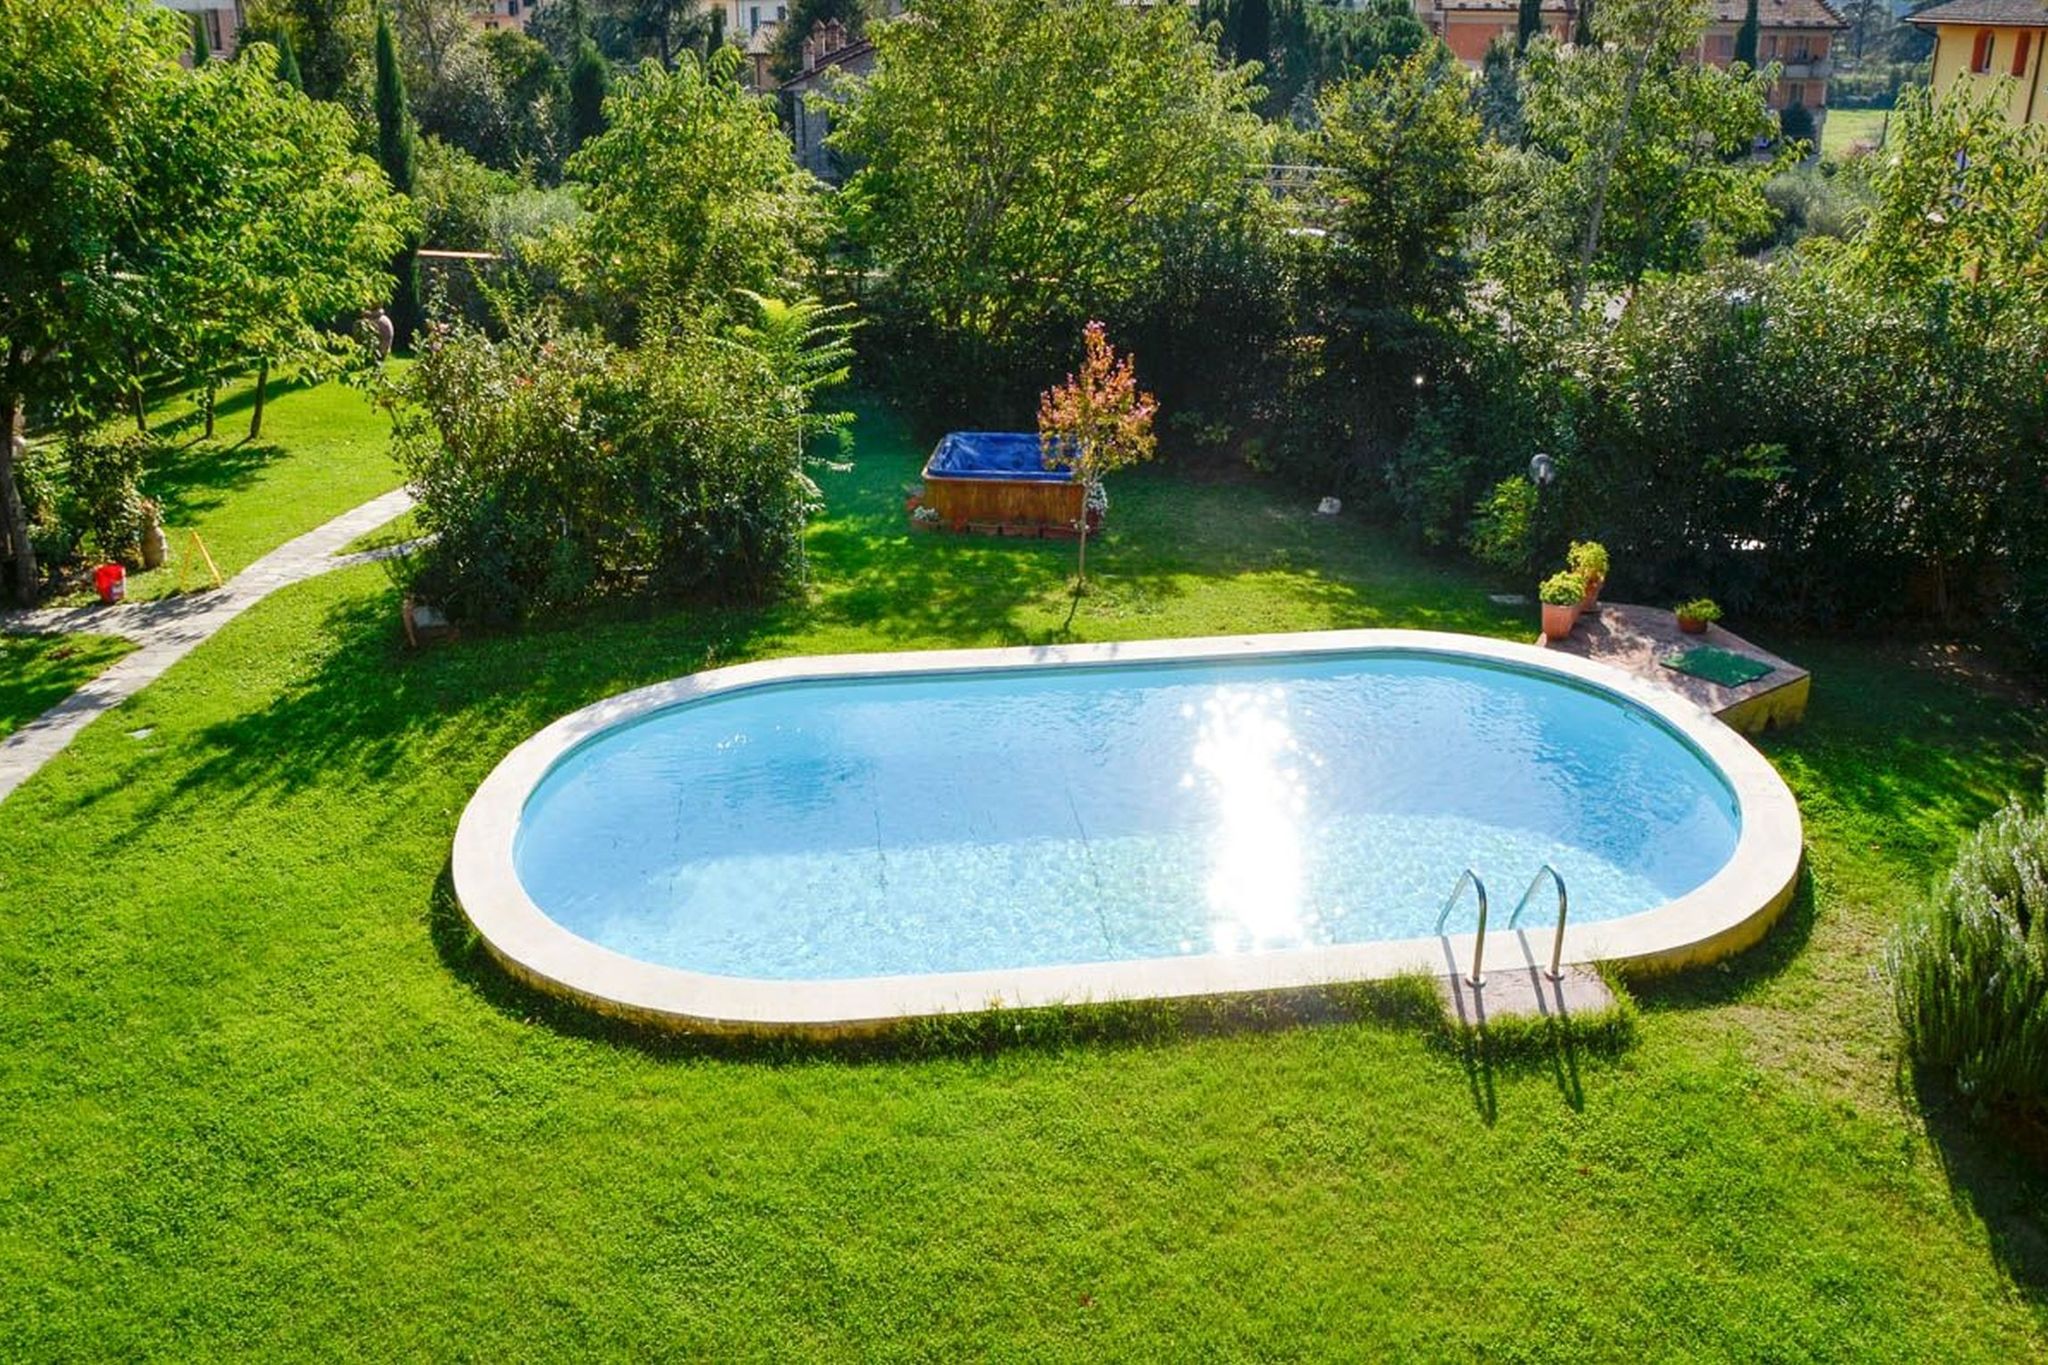 Gemütliches Ferienhaus mit eigenem Pool in Cortona